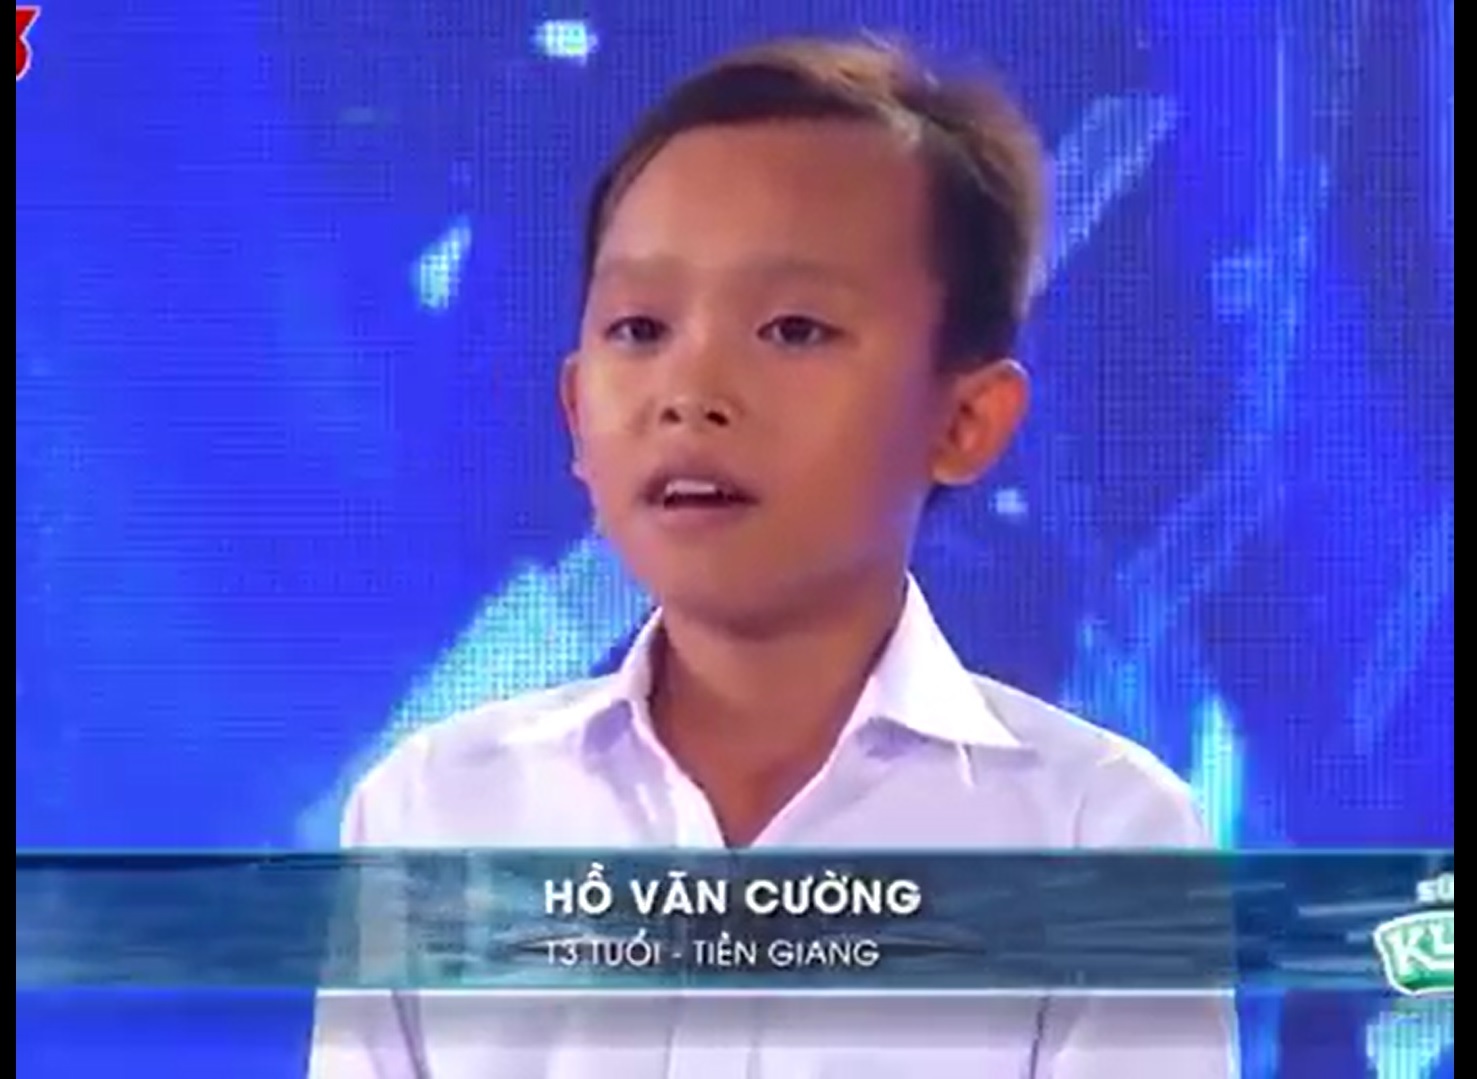 Dân mạng rần rần 'đào lại' clip ngày đầu tiên Hồ Văn Cường xuất hiện trong showbiz Việt